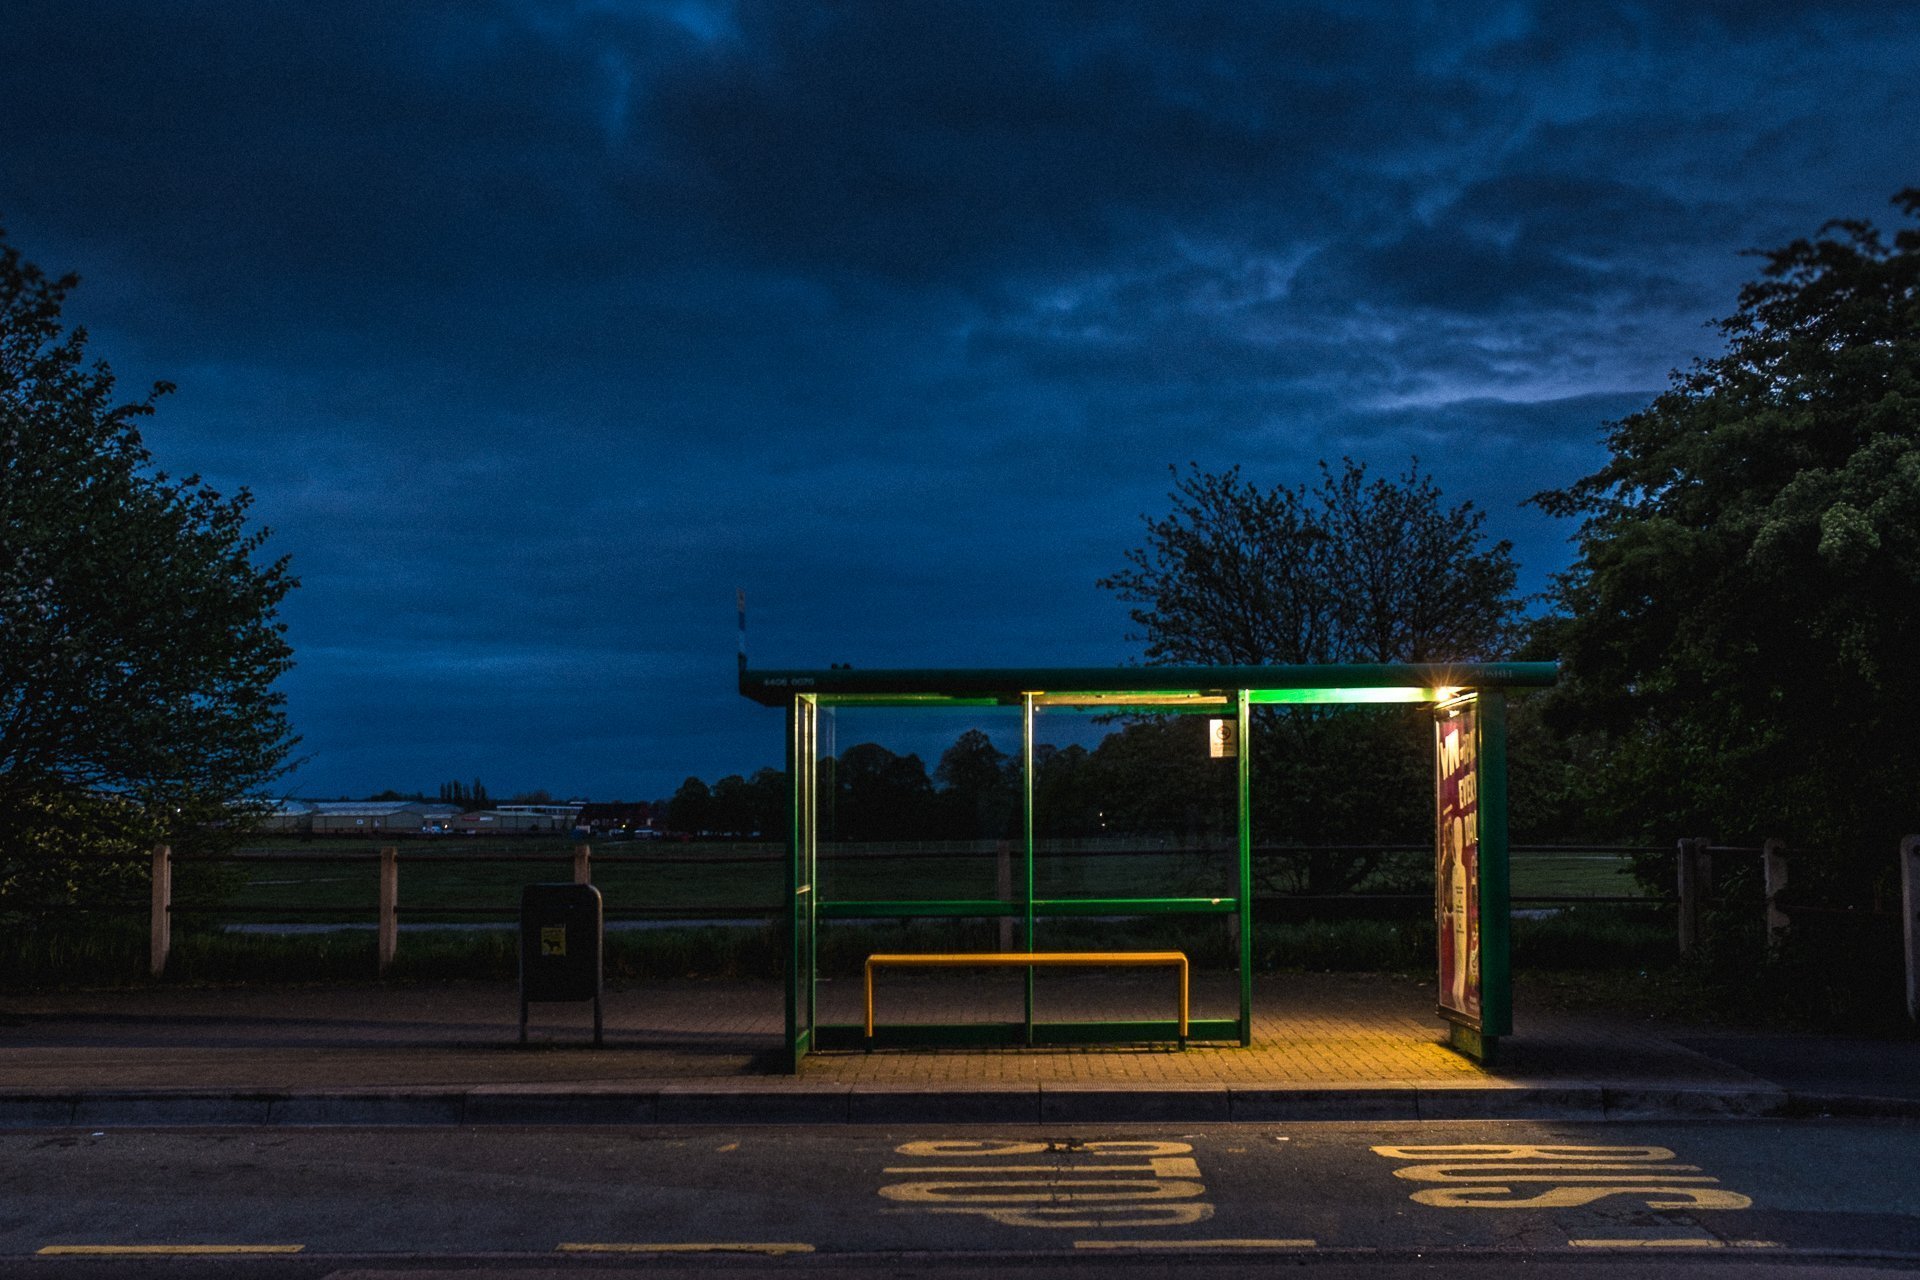 Остановка. Автобусная остановка. Остановка ночью. Остановка в лесу. Остановка плавно